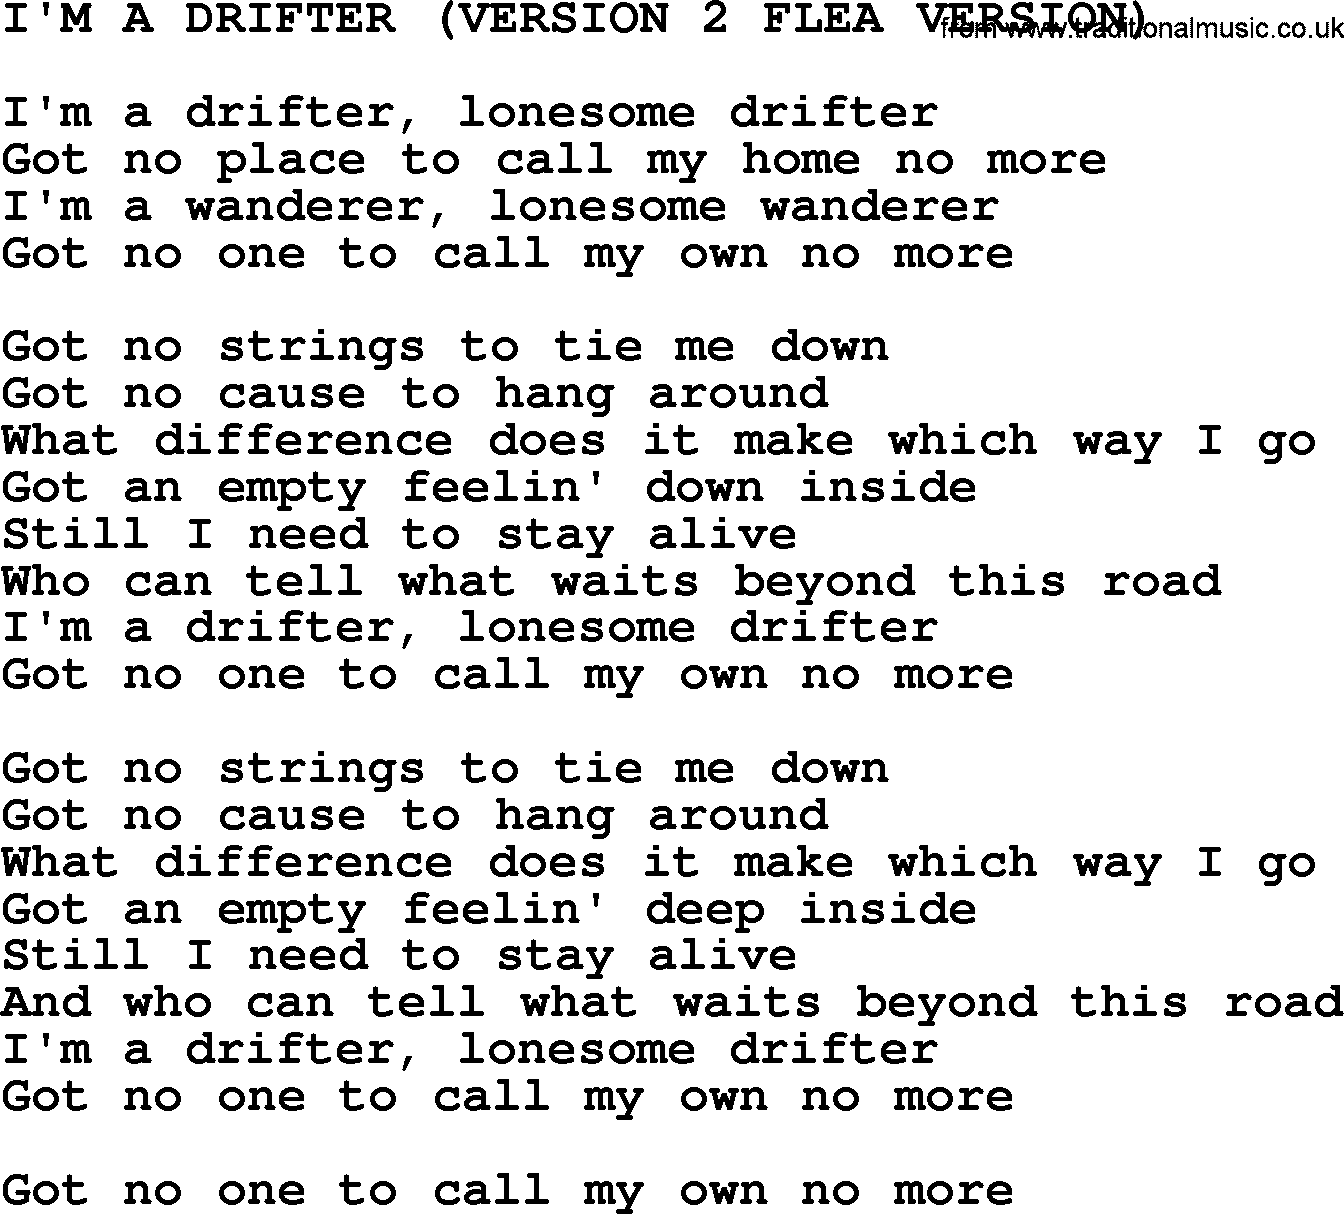 Johnny Cash song I'm A Drifter(Version 2 Flea Version).txt lyrics